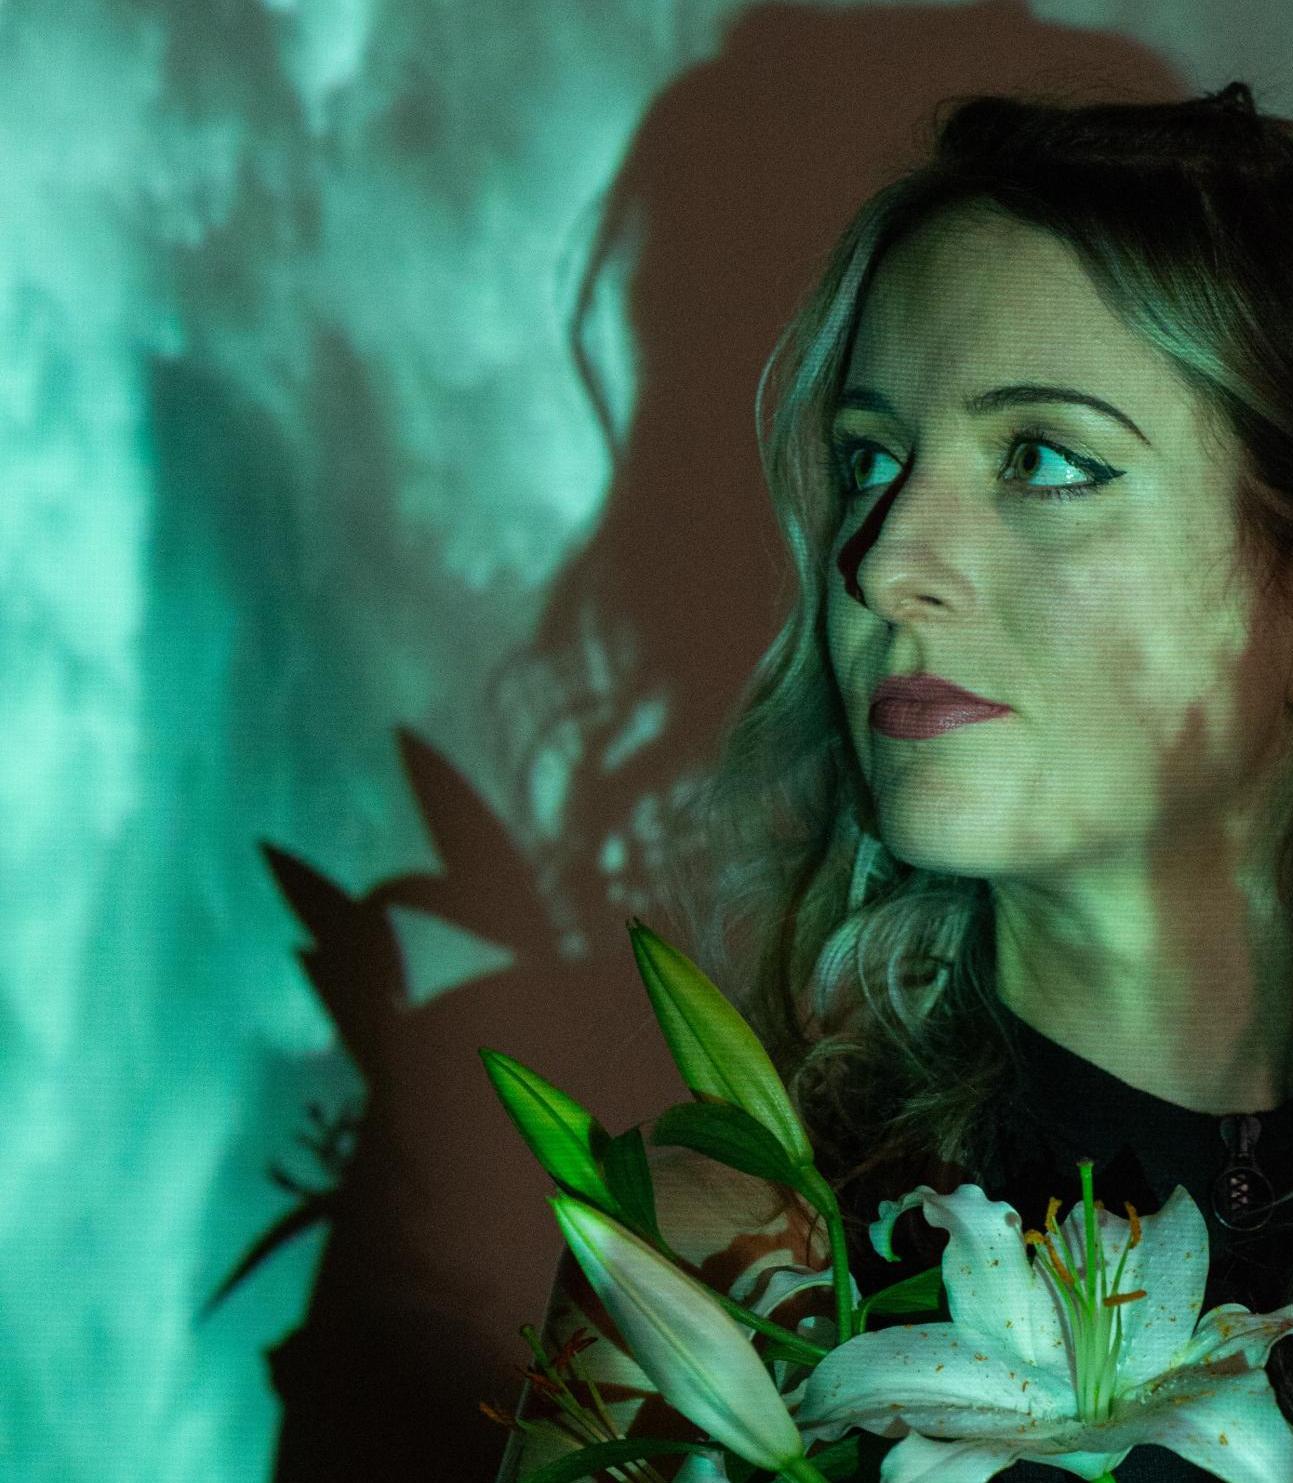 Profilporträt der DJane Alicea vor einer grün illuminierten Wand. In der Hand hält sie eine Lilie.